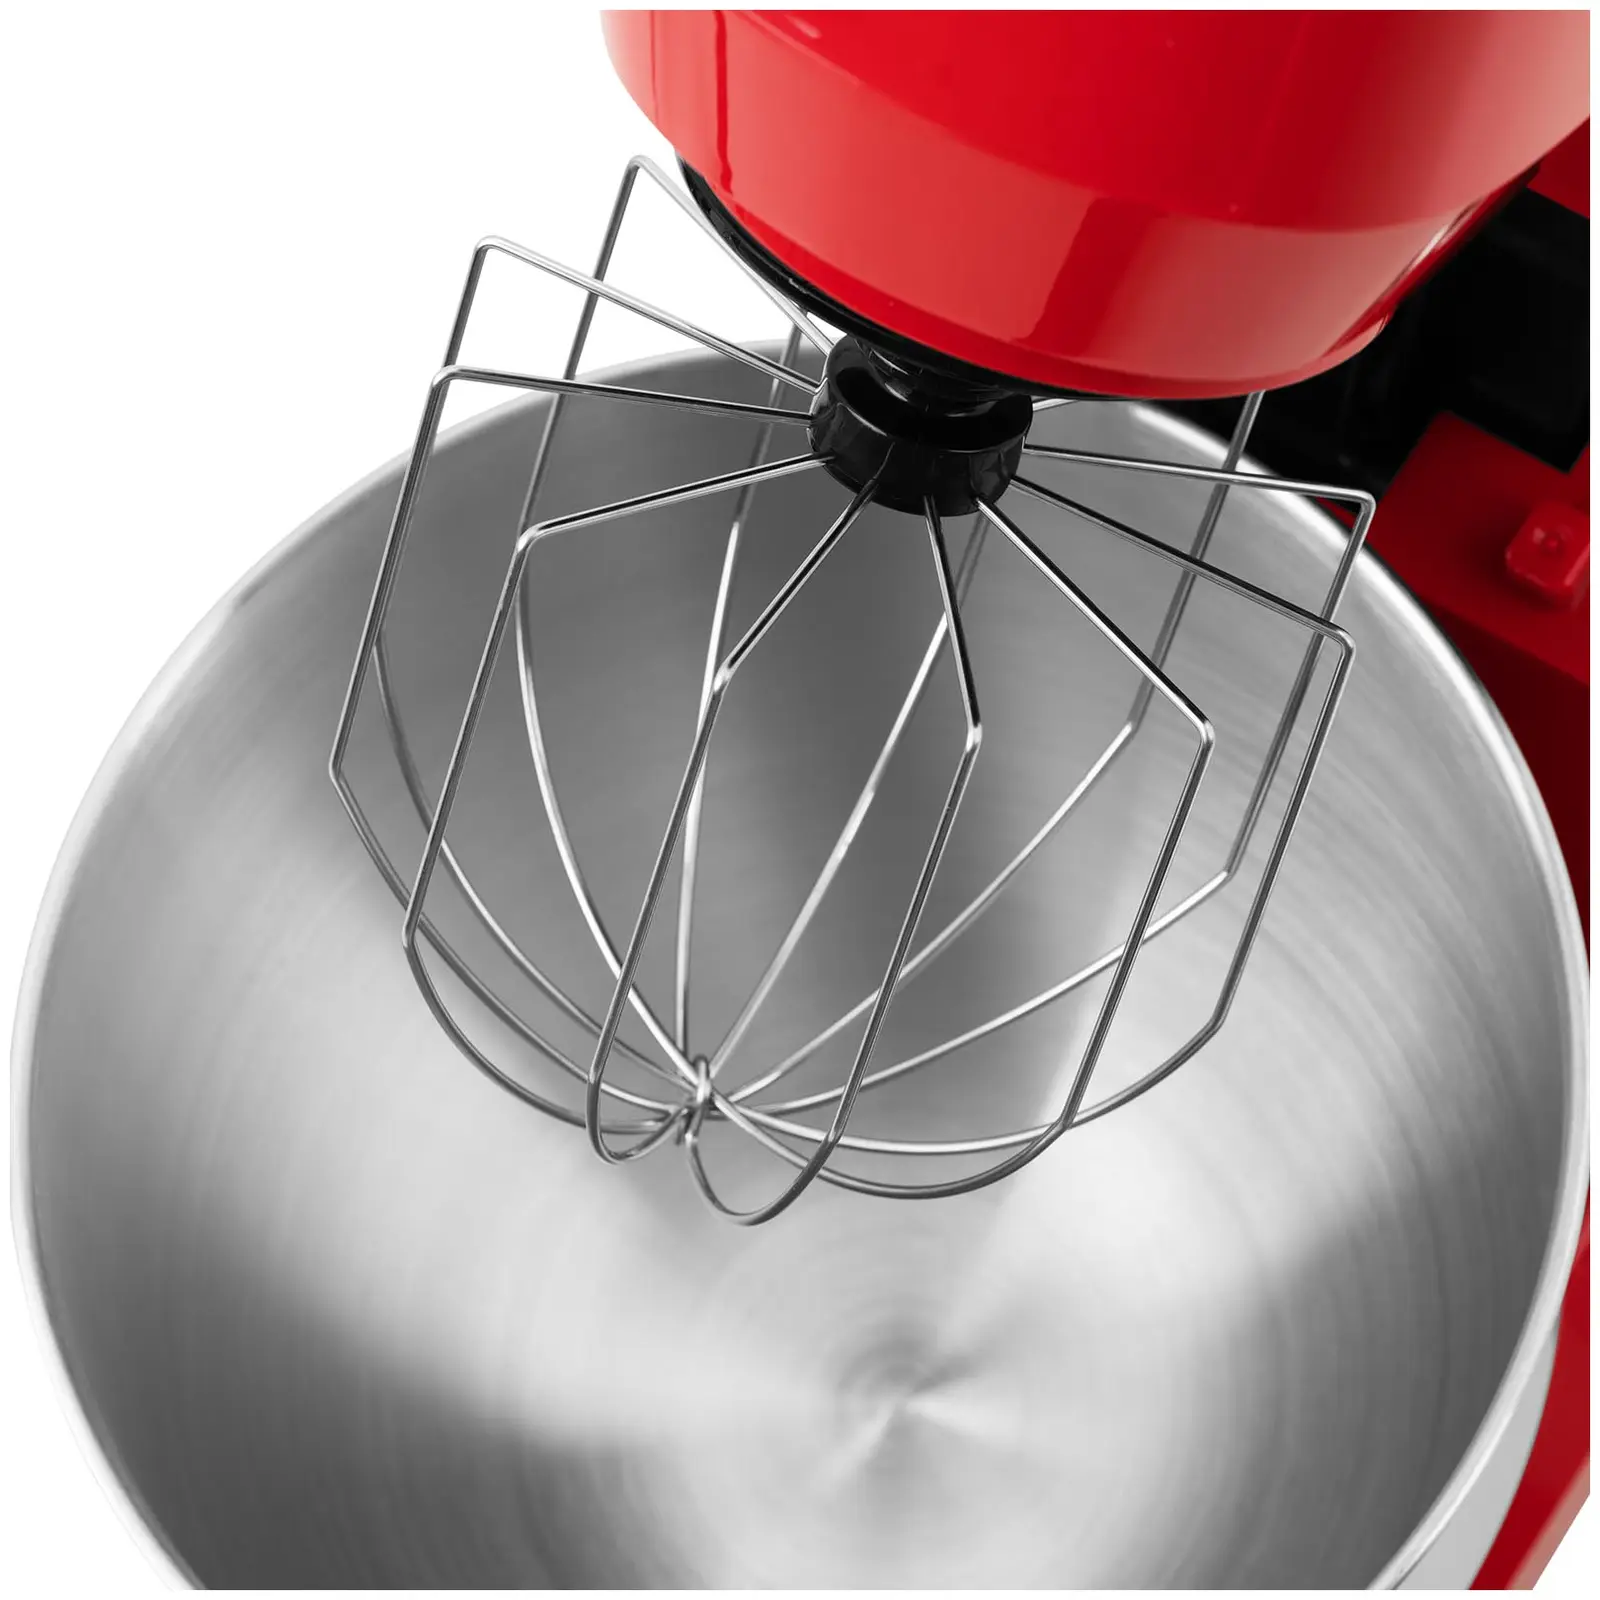 Kuchyňský robot - vč. mixéru, mlýnku na maso a kráječe - 1 300 W - červený